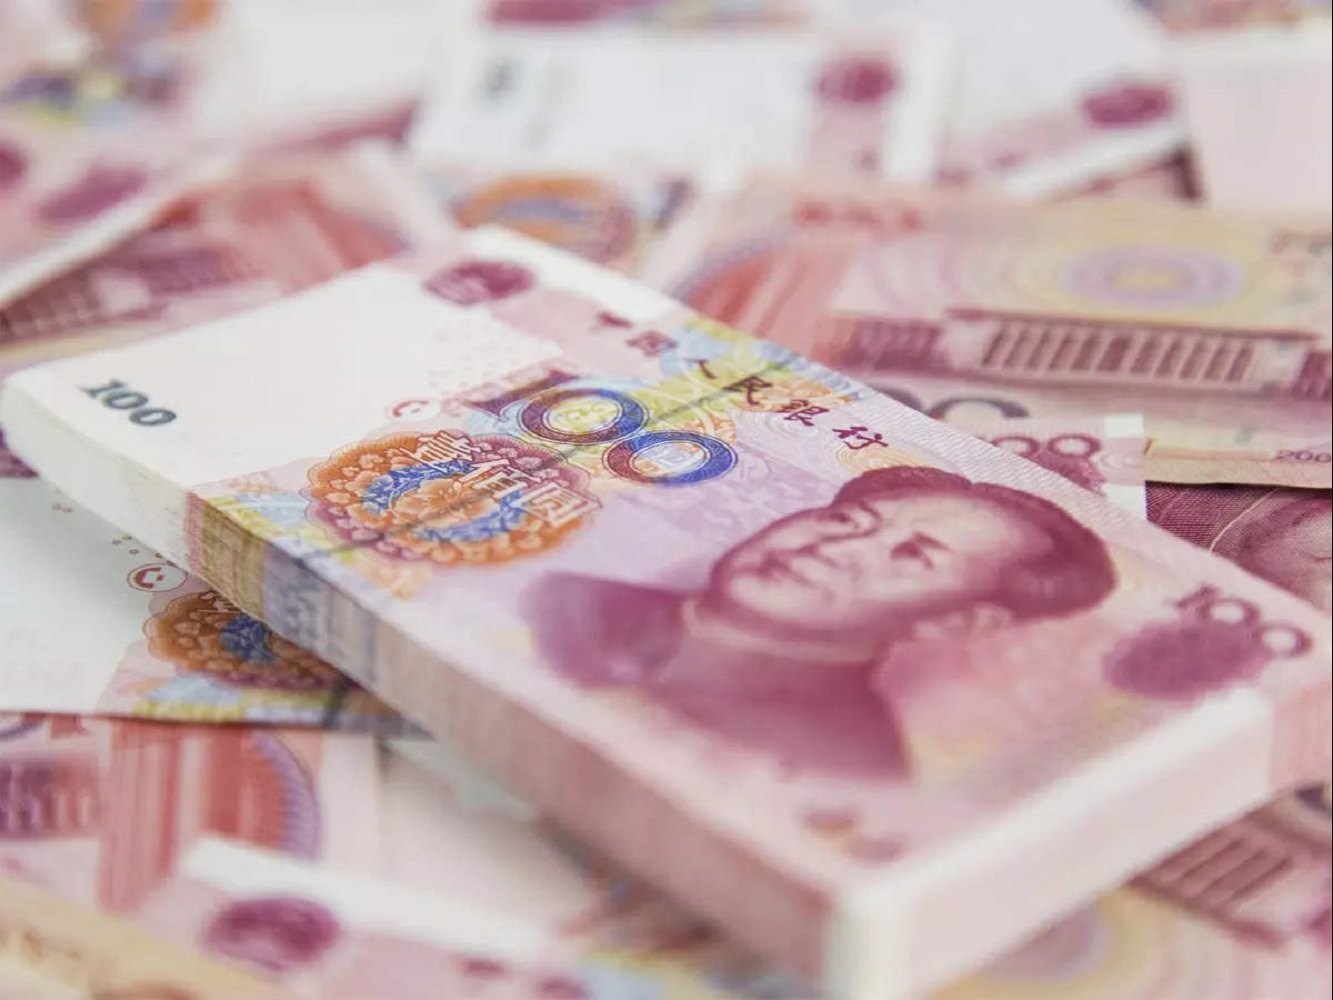 چگونه از ایران به چین پول انتقال دهیم؟ | نحوه انتقال ارز به چین